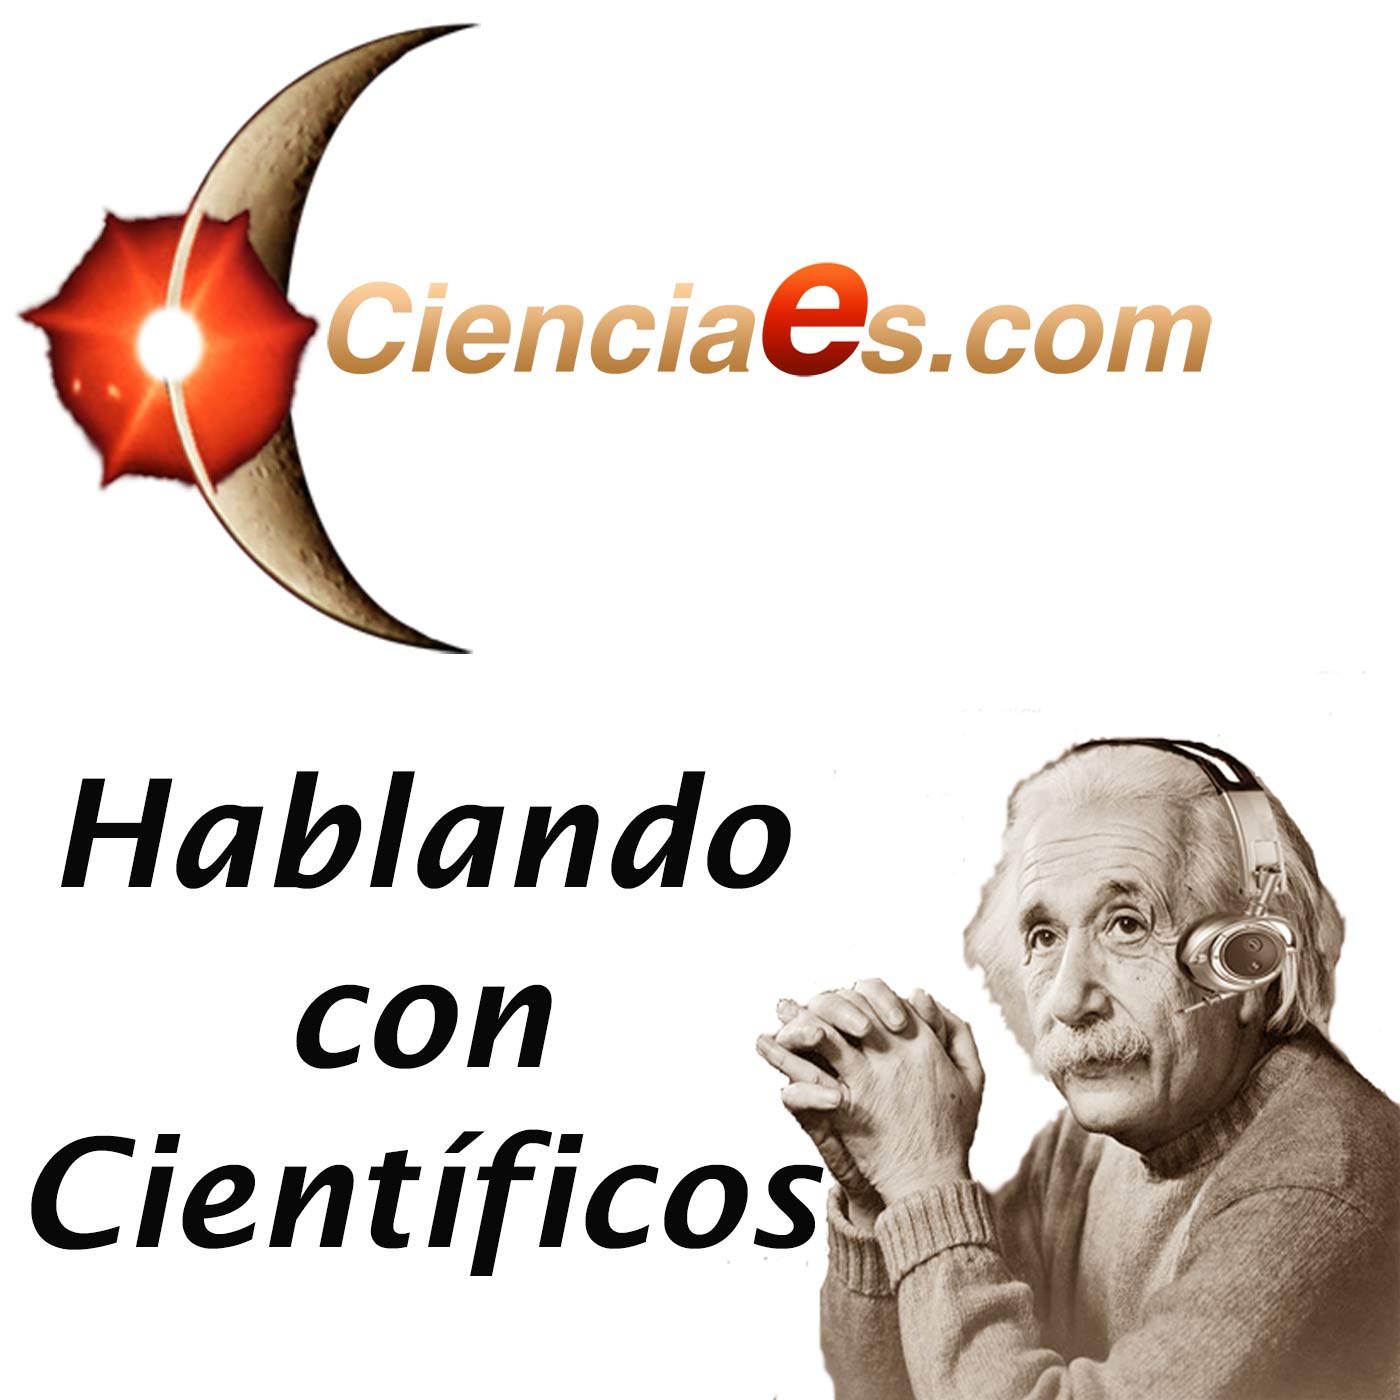 Hablando con Científicos - Cienciaes.com Podcast artwork